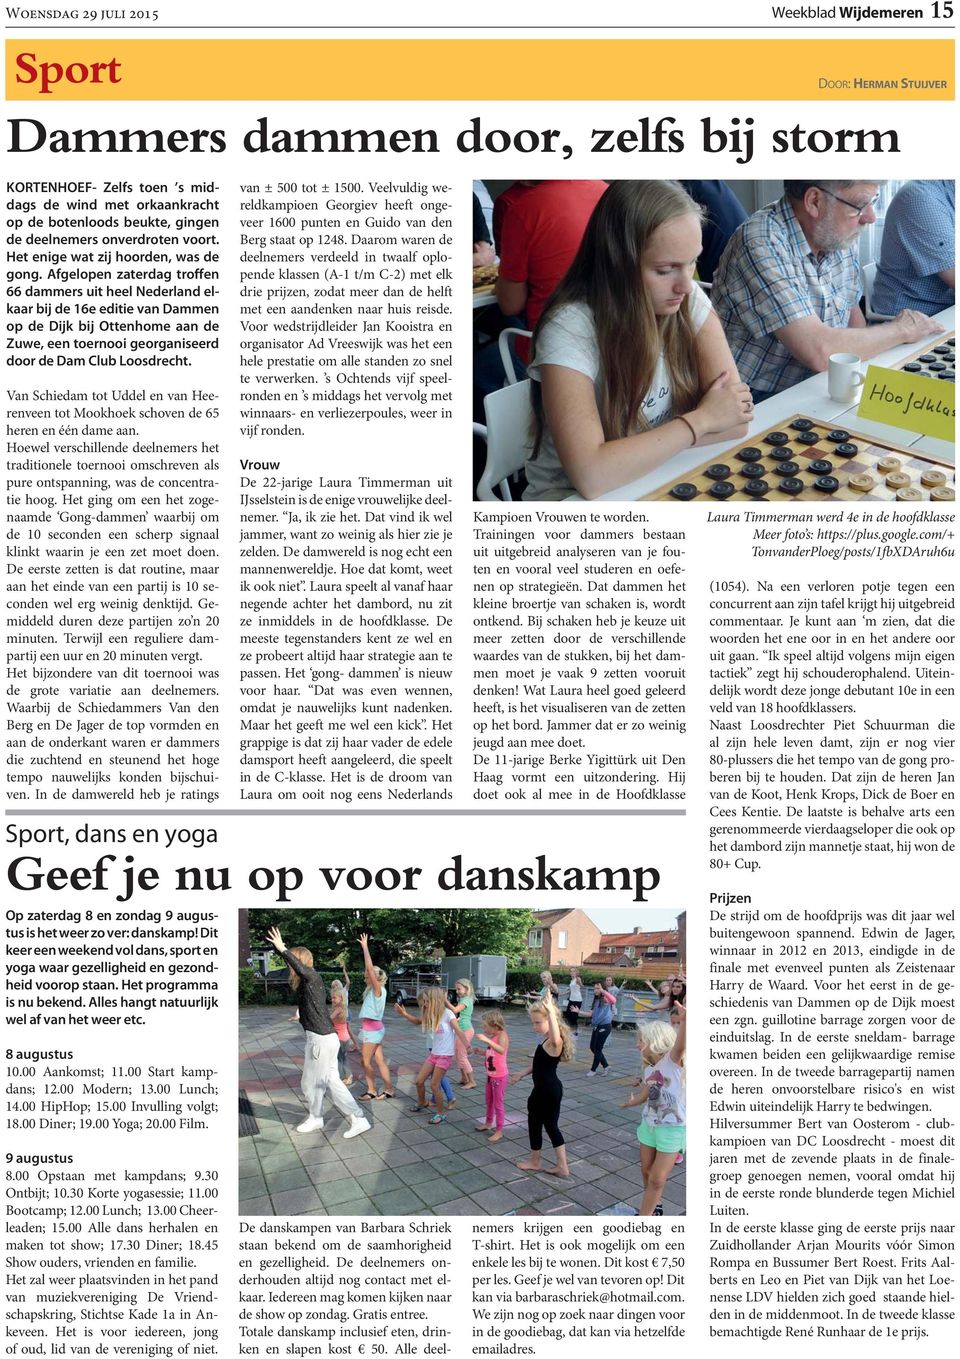 Afgelopen zaterdag troffen 66 dammers uit heel Nederland elkaar bij de 16e editie van Dammen op de Dijk bij Ottenhome aan de Zuwe, een toernooi georganiseerd door de Dam Club Loosdrecht.